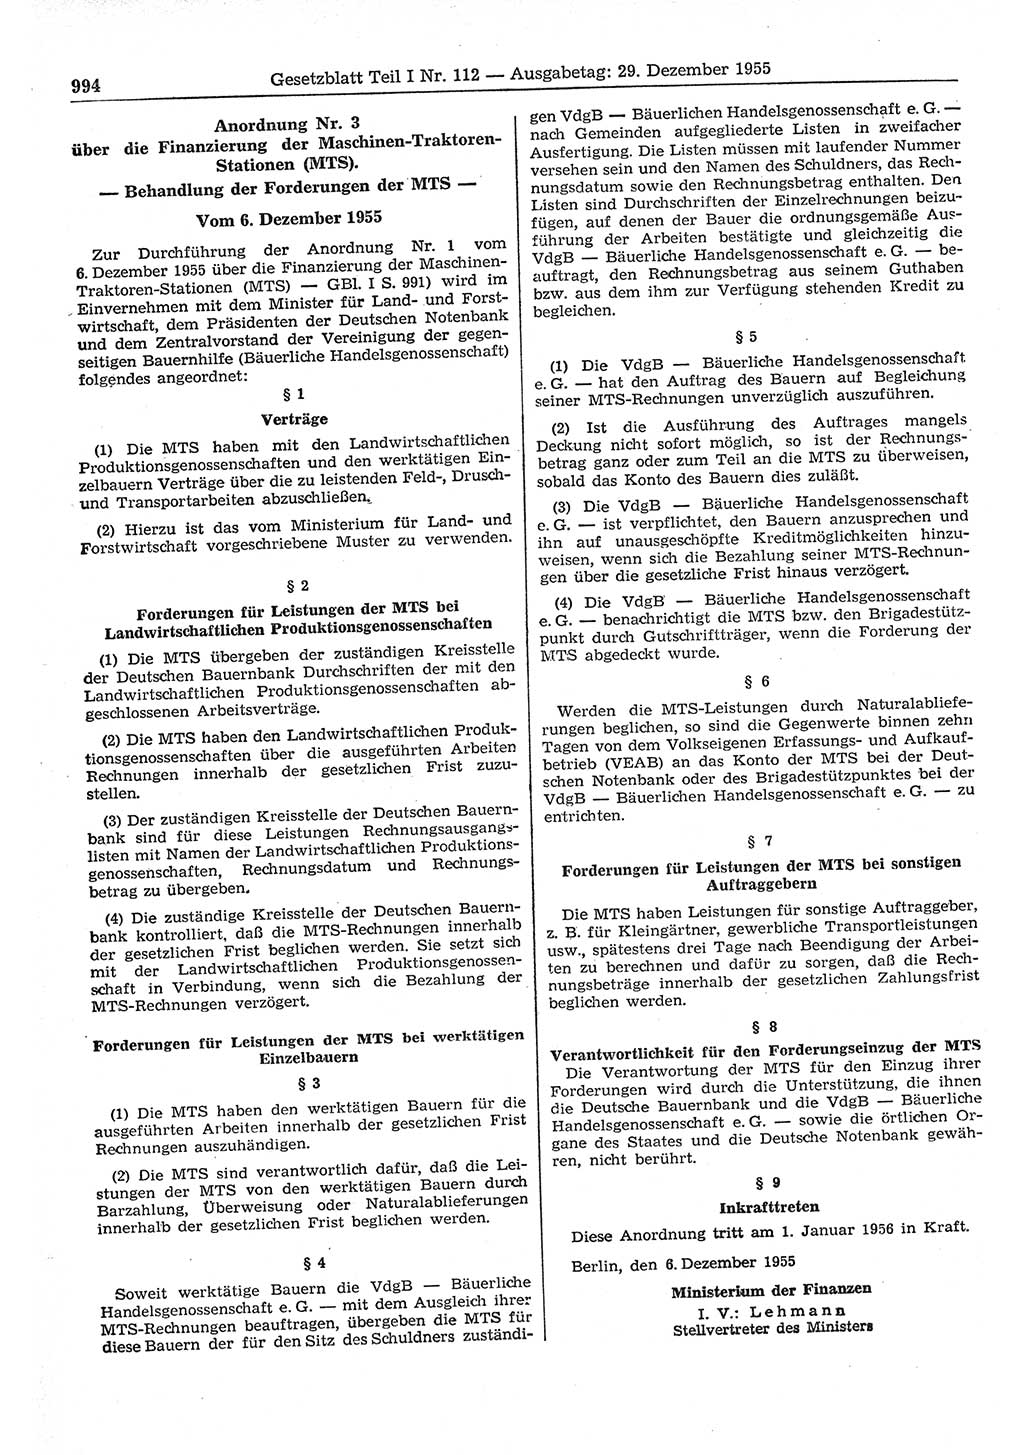 Gesetzblatt (GBl.) der Deutschen Demokratischen Republik (DDR) Teil Ⅰ 1955, Seite 994 (GBl. DDR Ⅰ 1955, S. 994)